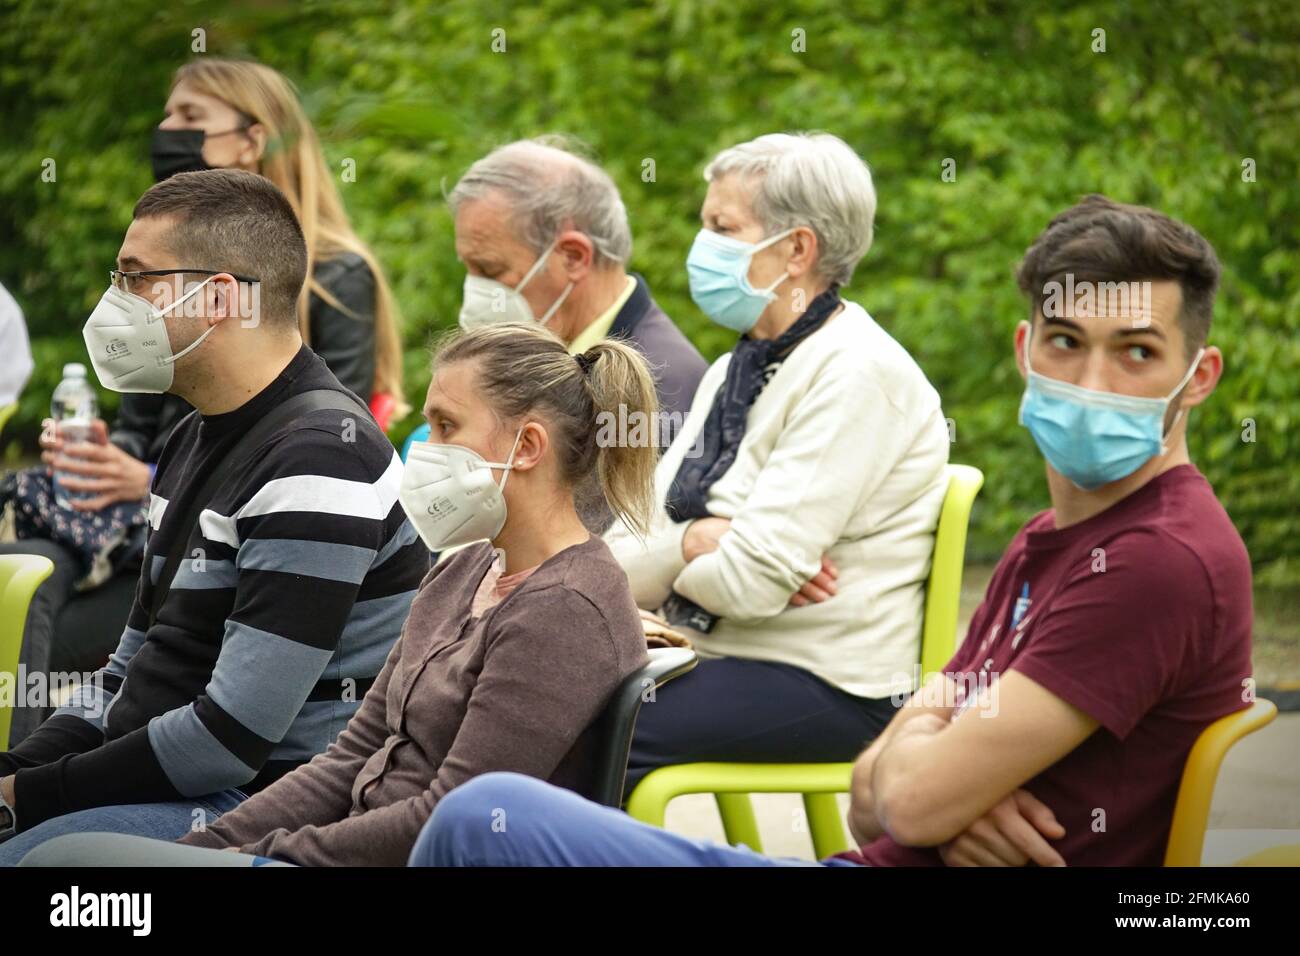 Das Publikum, das Covid-Masken trägt, spielt zunächst in einem Outdoor-Park zur Wiedereröffnung nach der Pandemie. Mailand, Italien - Mai 2021 Stockfoto